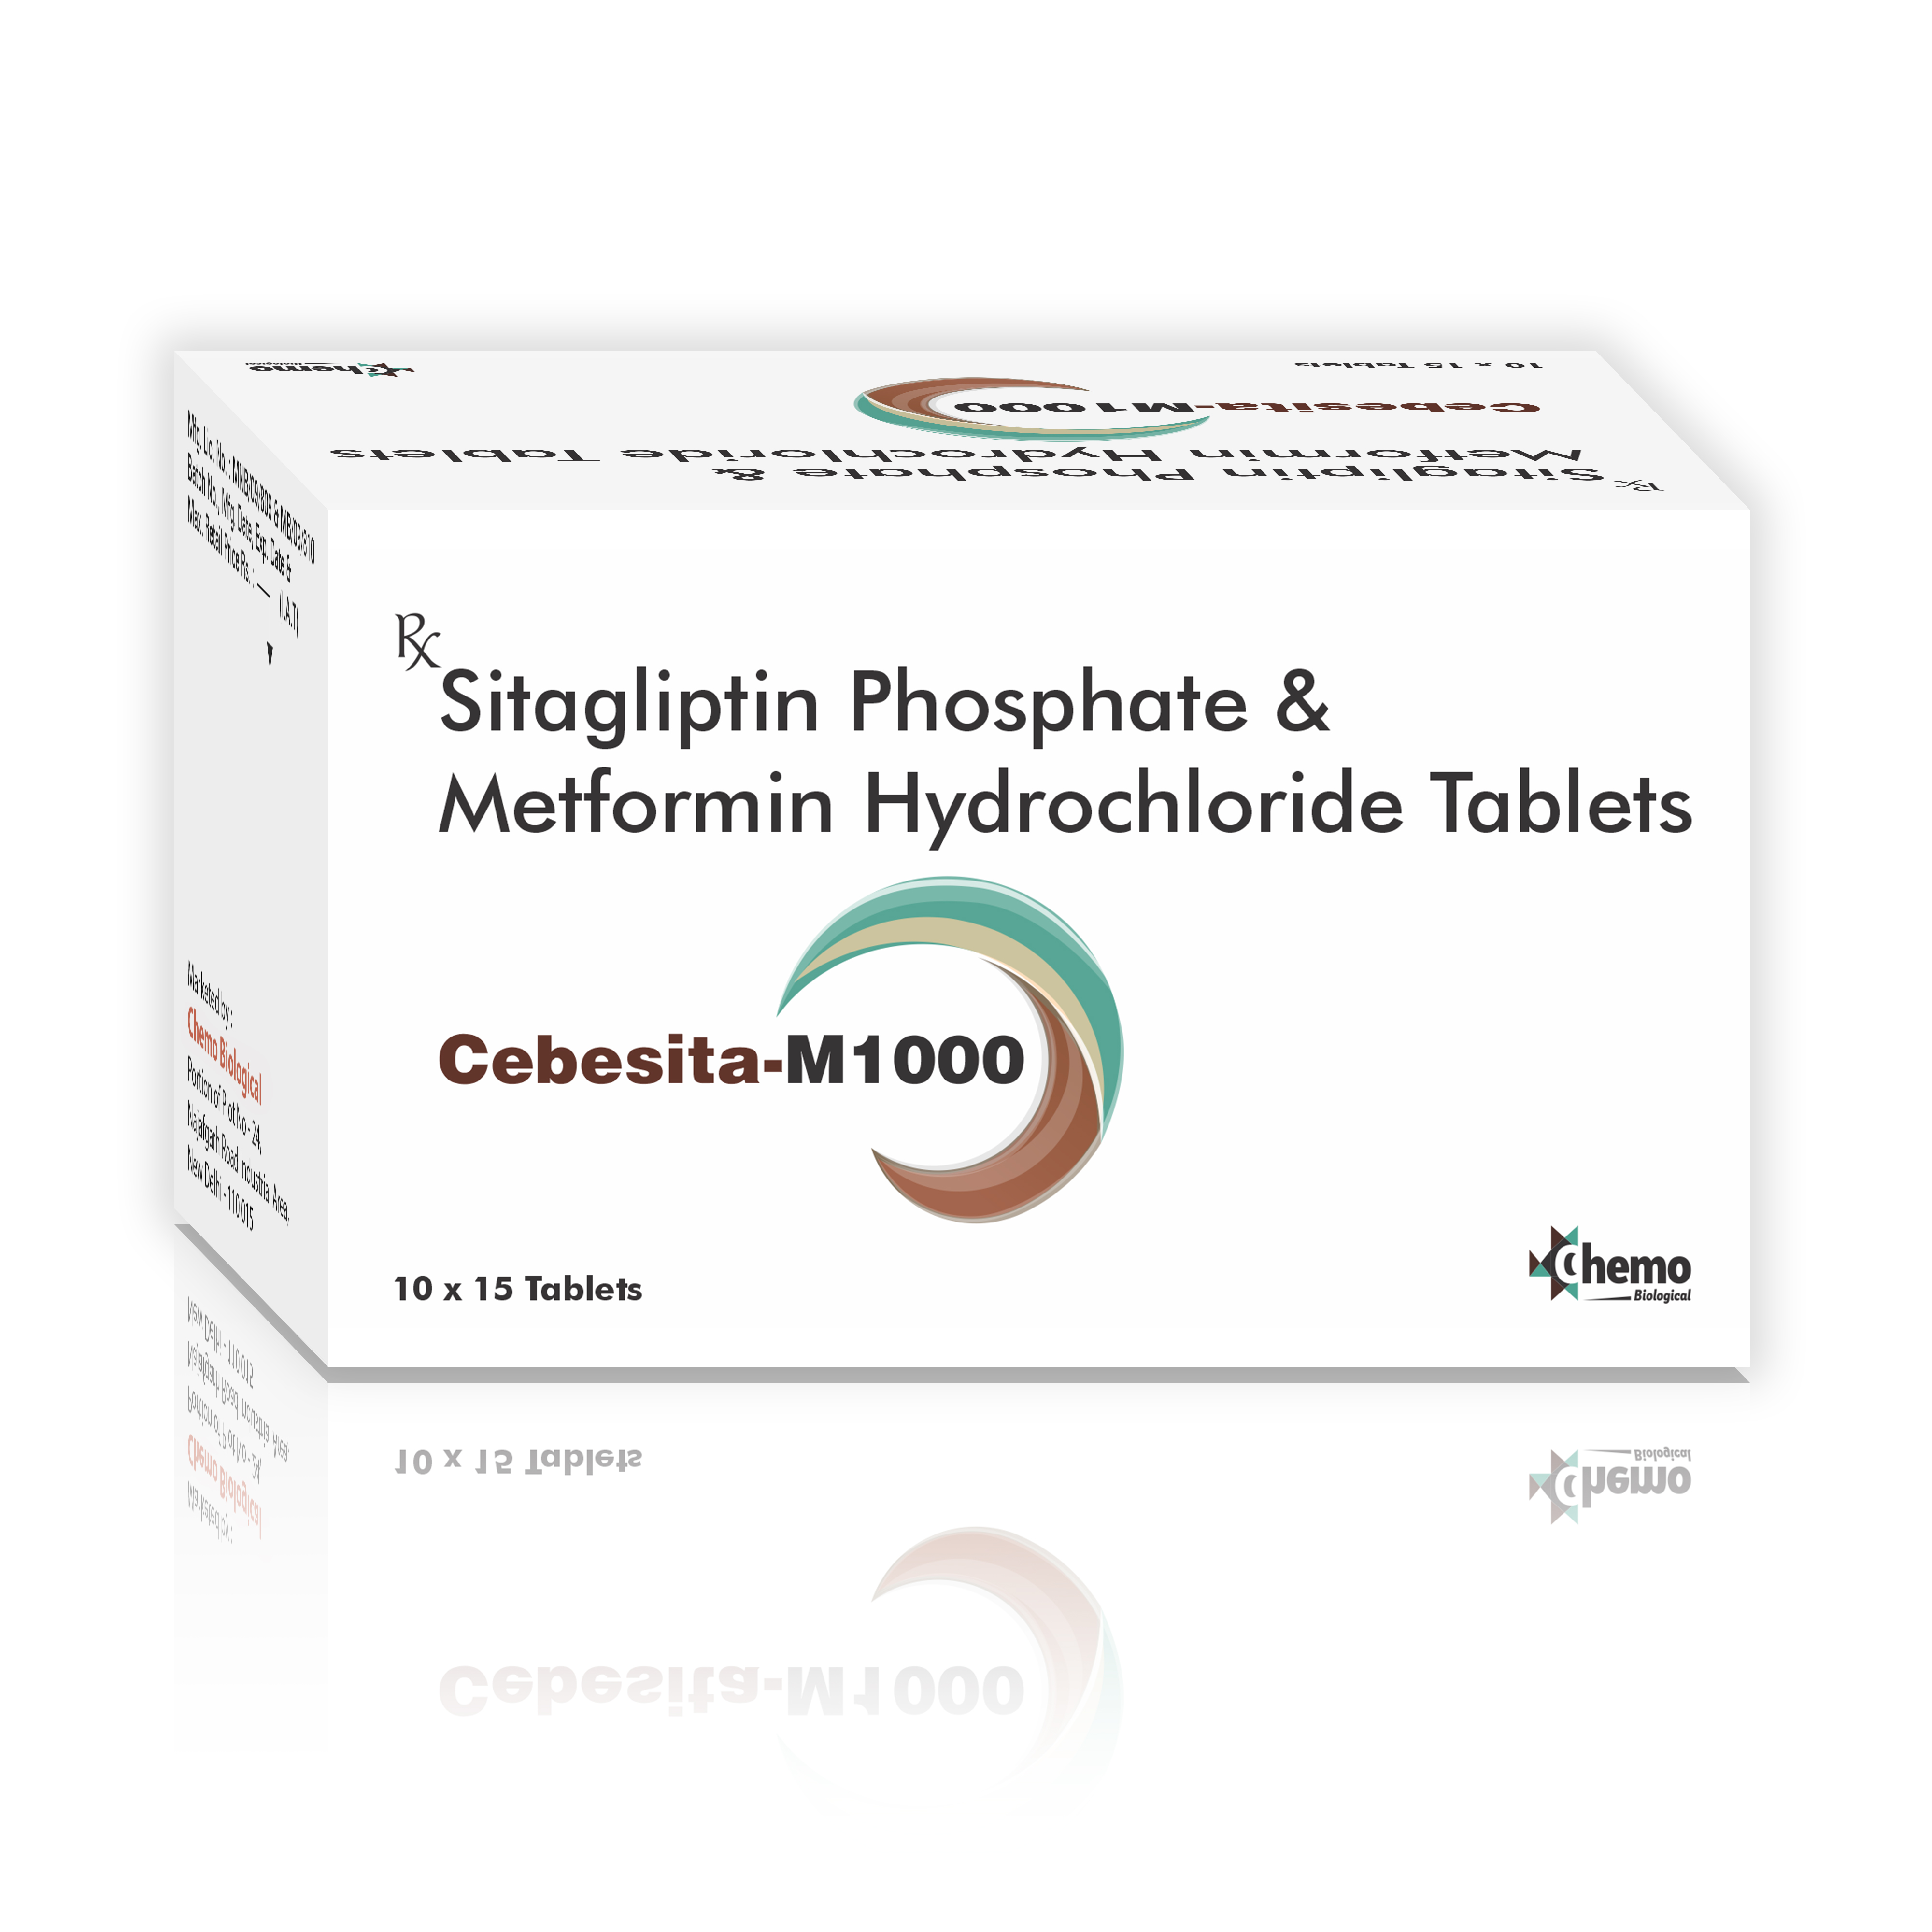 sitagliptin phosphate 50mg + metformin hydrochloride 1000mg